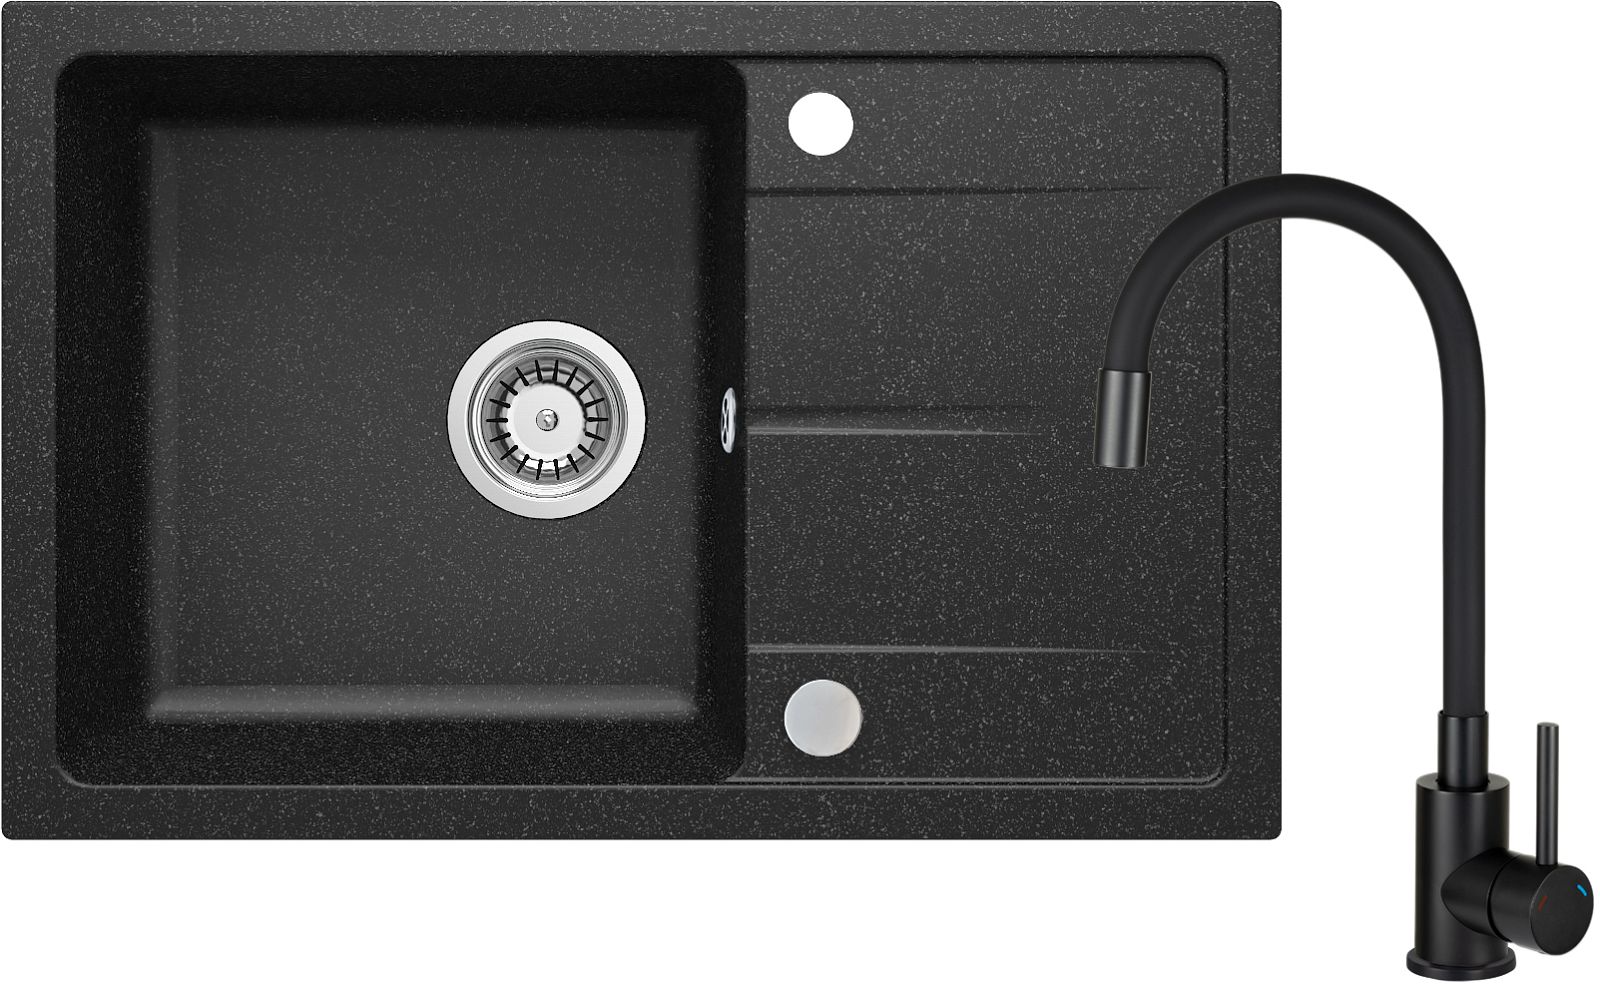 Granitspülbecken mit Armatur, flexibler Auslauf - ZRDP2113 - Główne zdjęcie produktowe